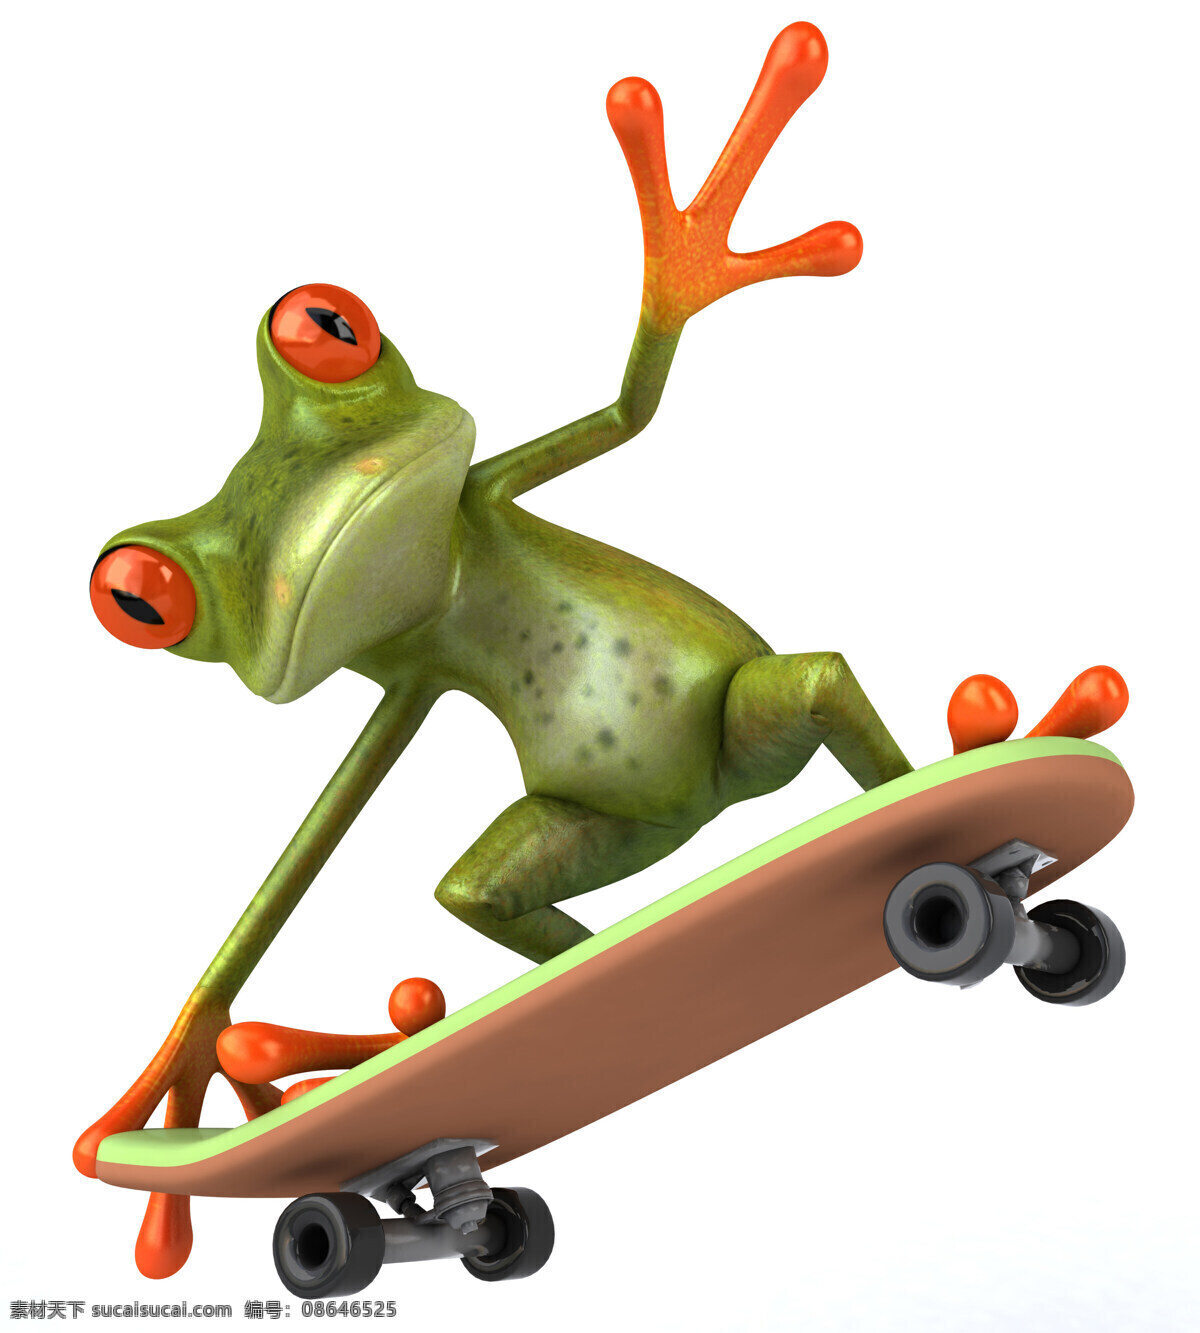 可爱逗趣青蛙 青蛙 创意 逗趣 滑板 青蛙王子 卡通 可爱 3d设计 高清图片 3d青蛙